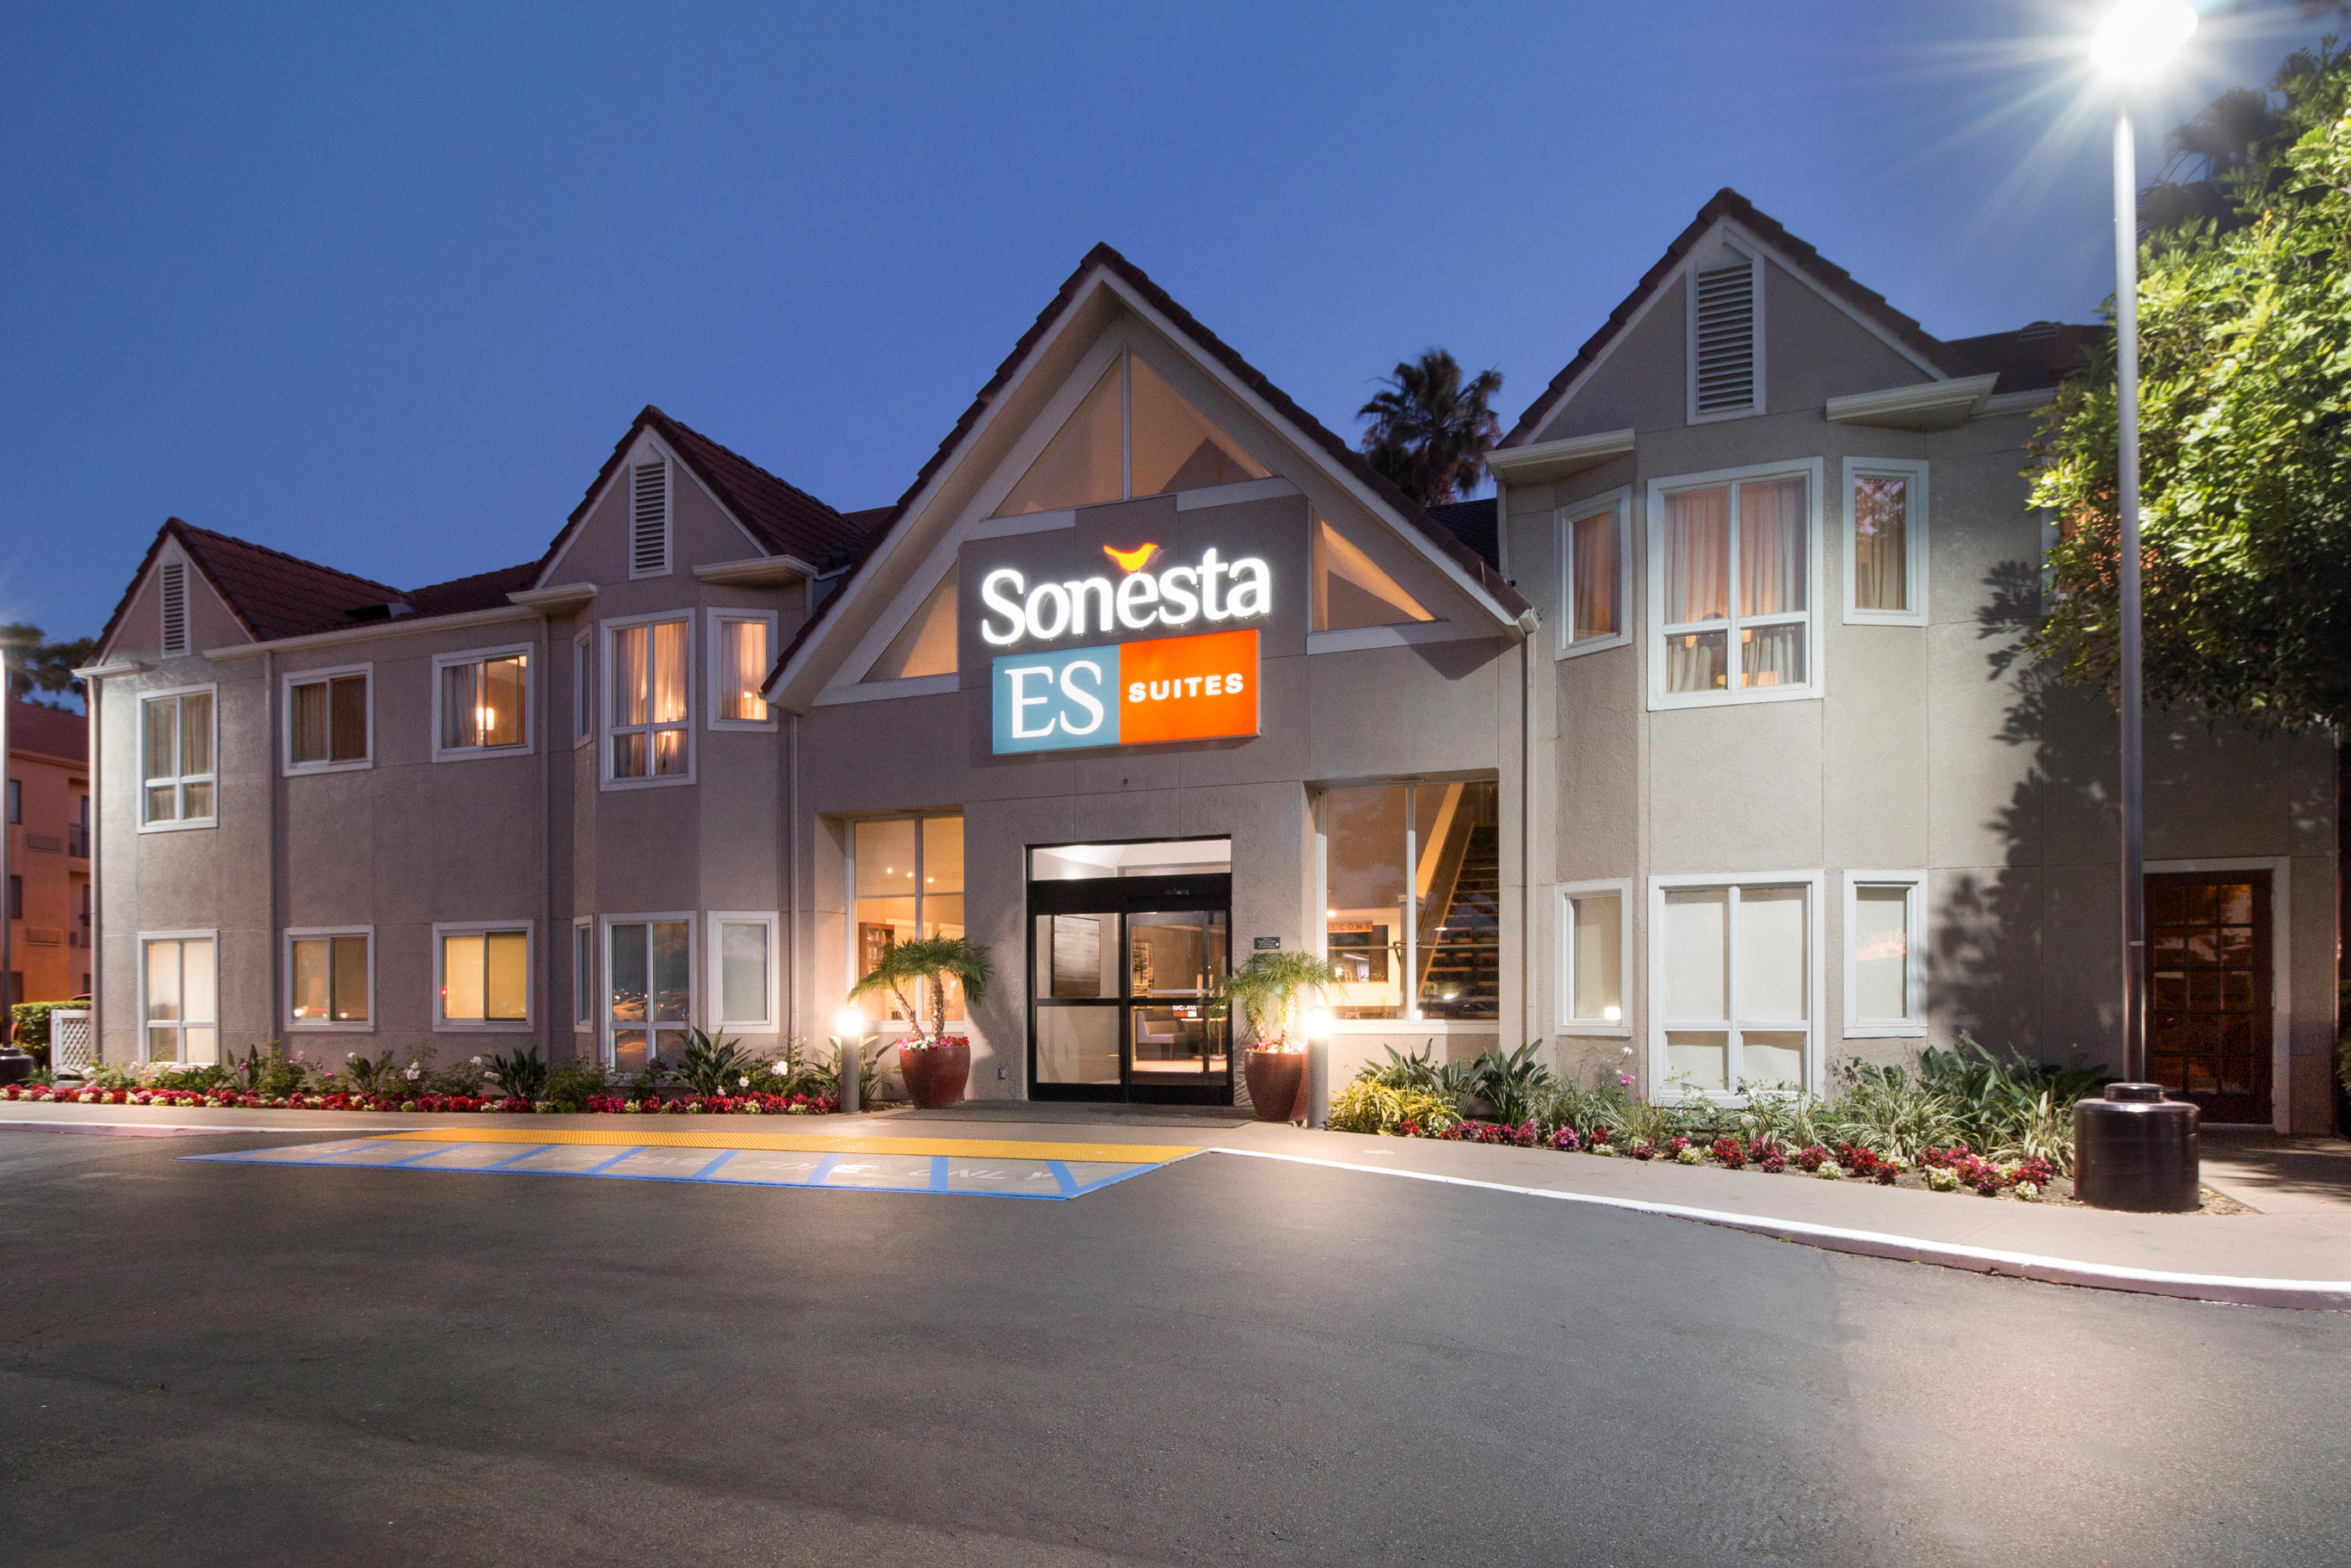 Image 2 | Sonesta ES Suites Huntington Beach Fountain Valley